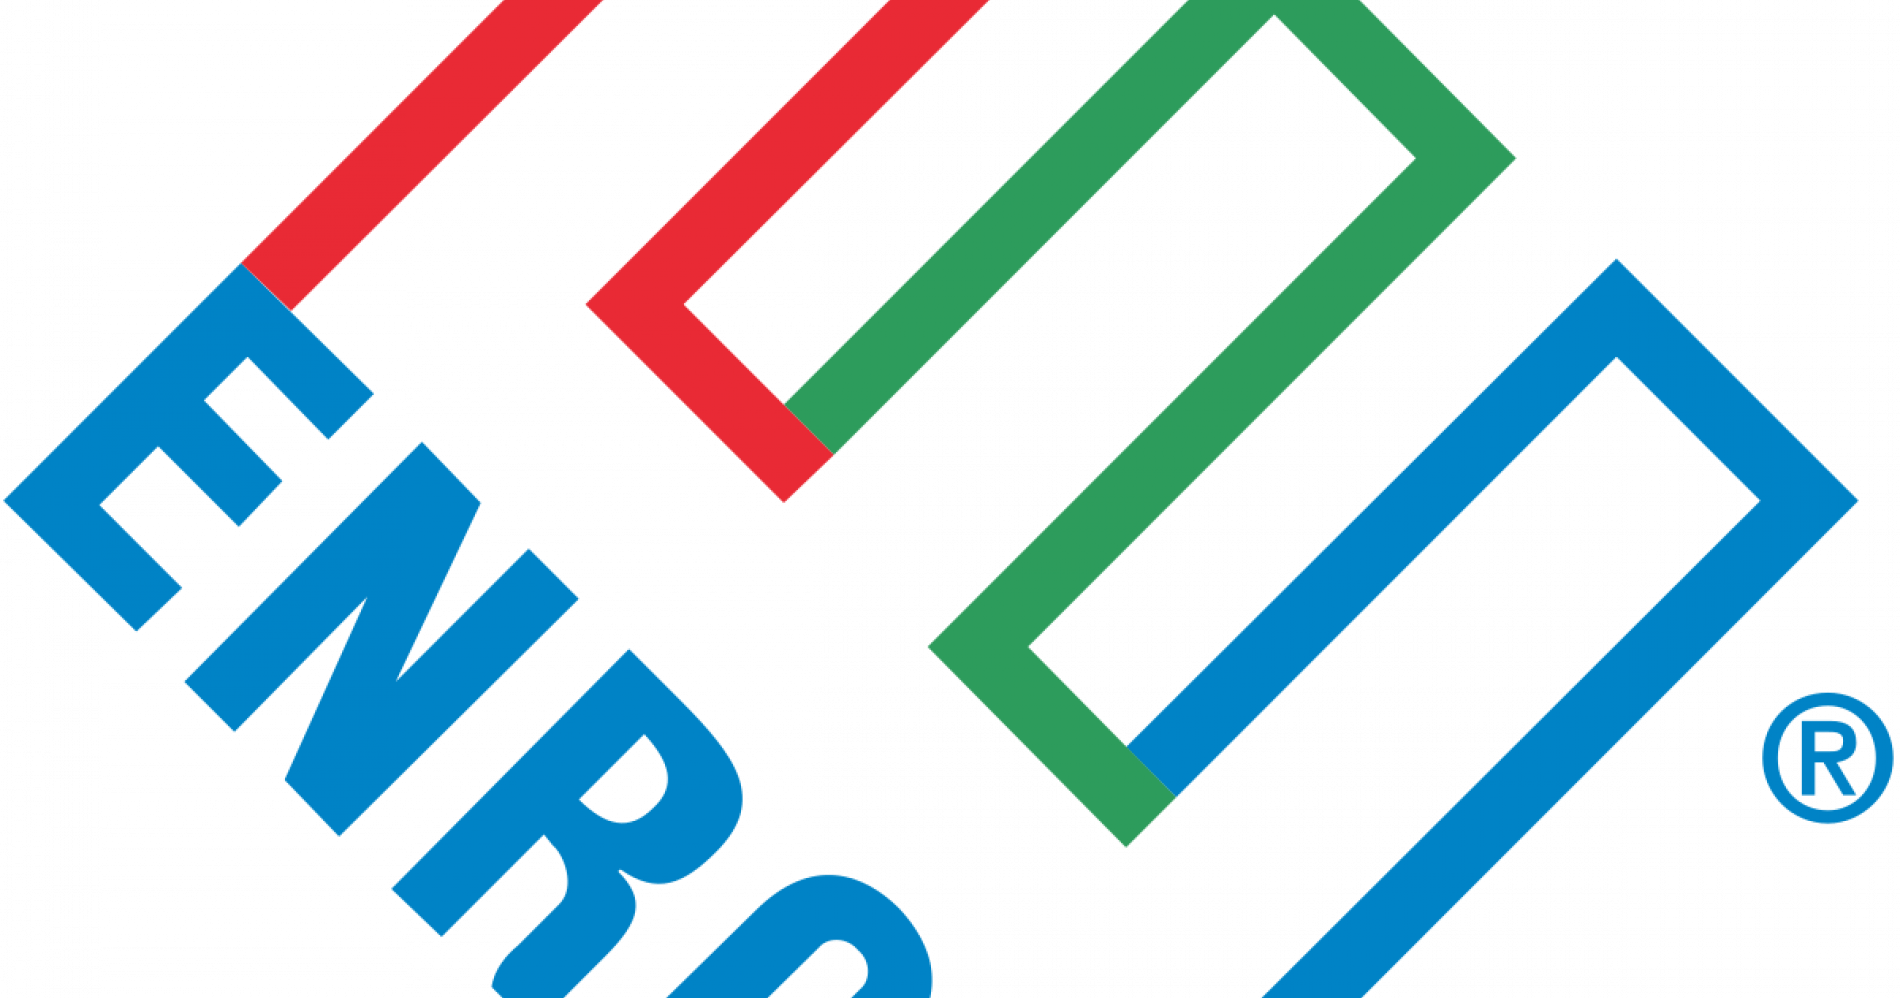 Enron (Sumber gambar: en.wikipedia.org)